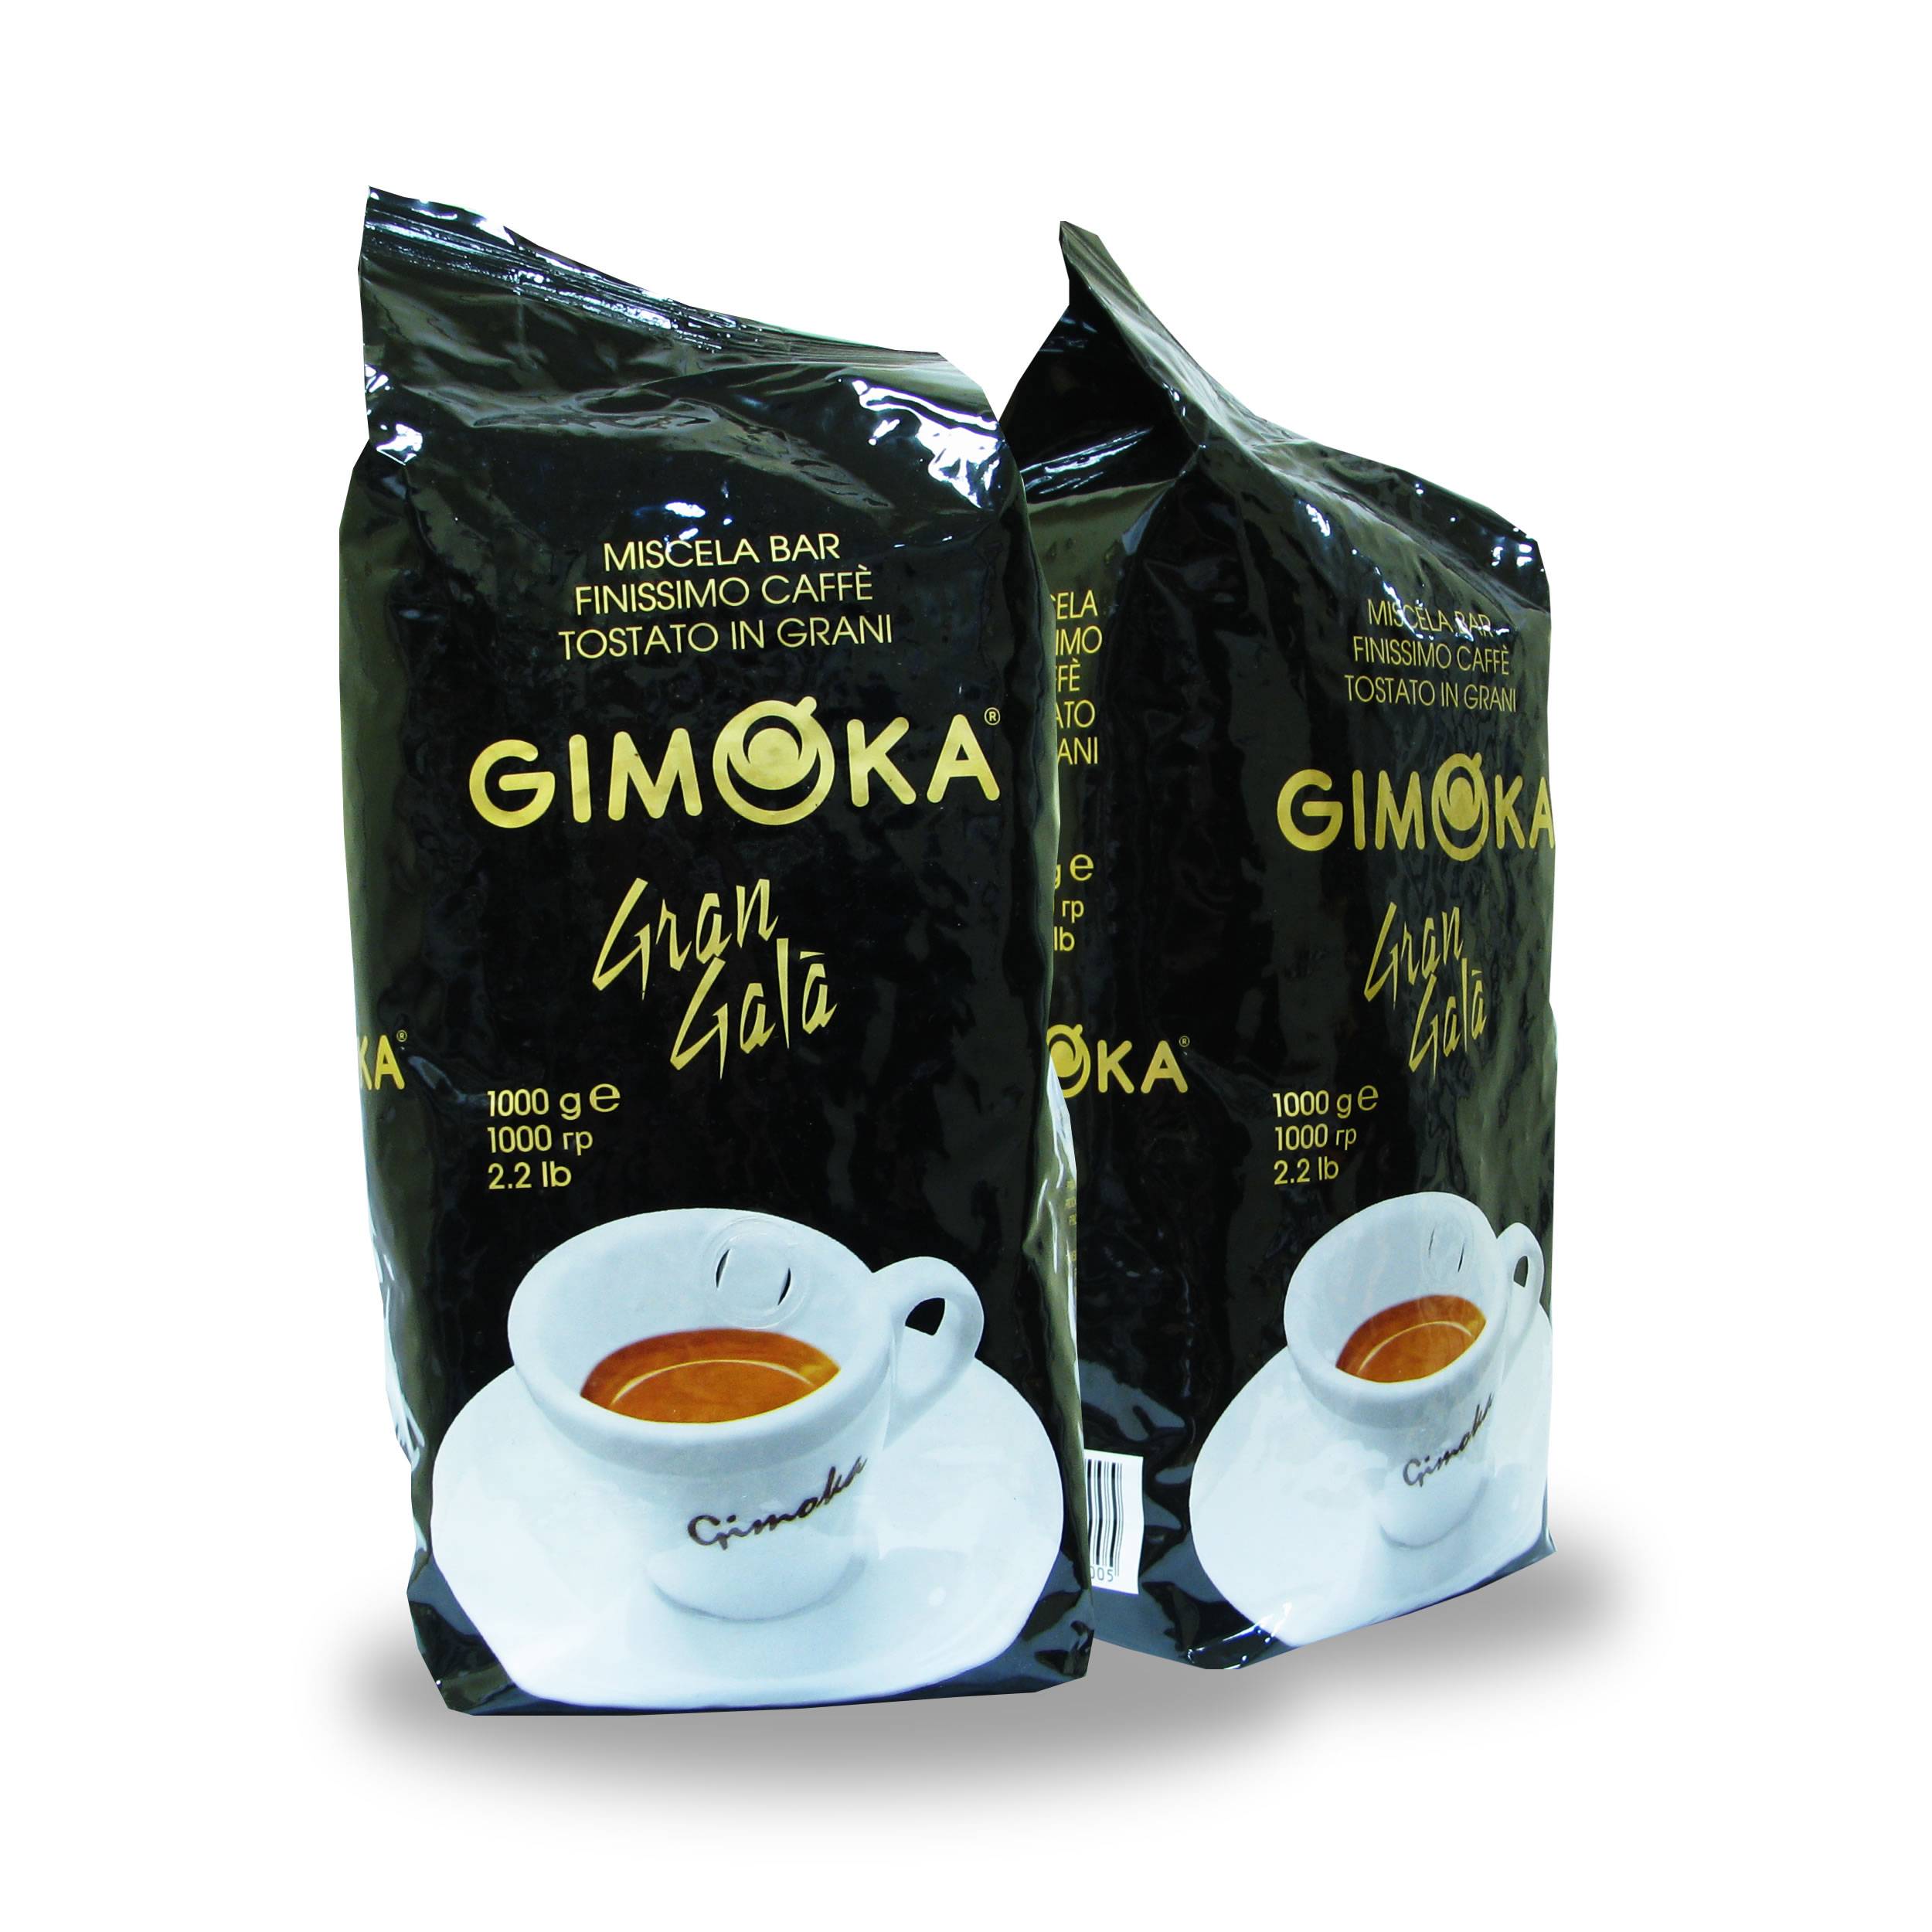 Отзыв про кофе в зернах gimoka dulcis vitae: "мой вердикт - кофе в зёрнах джимока не реабилитирован"